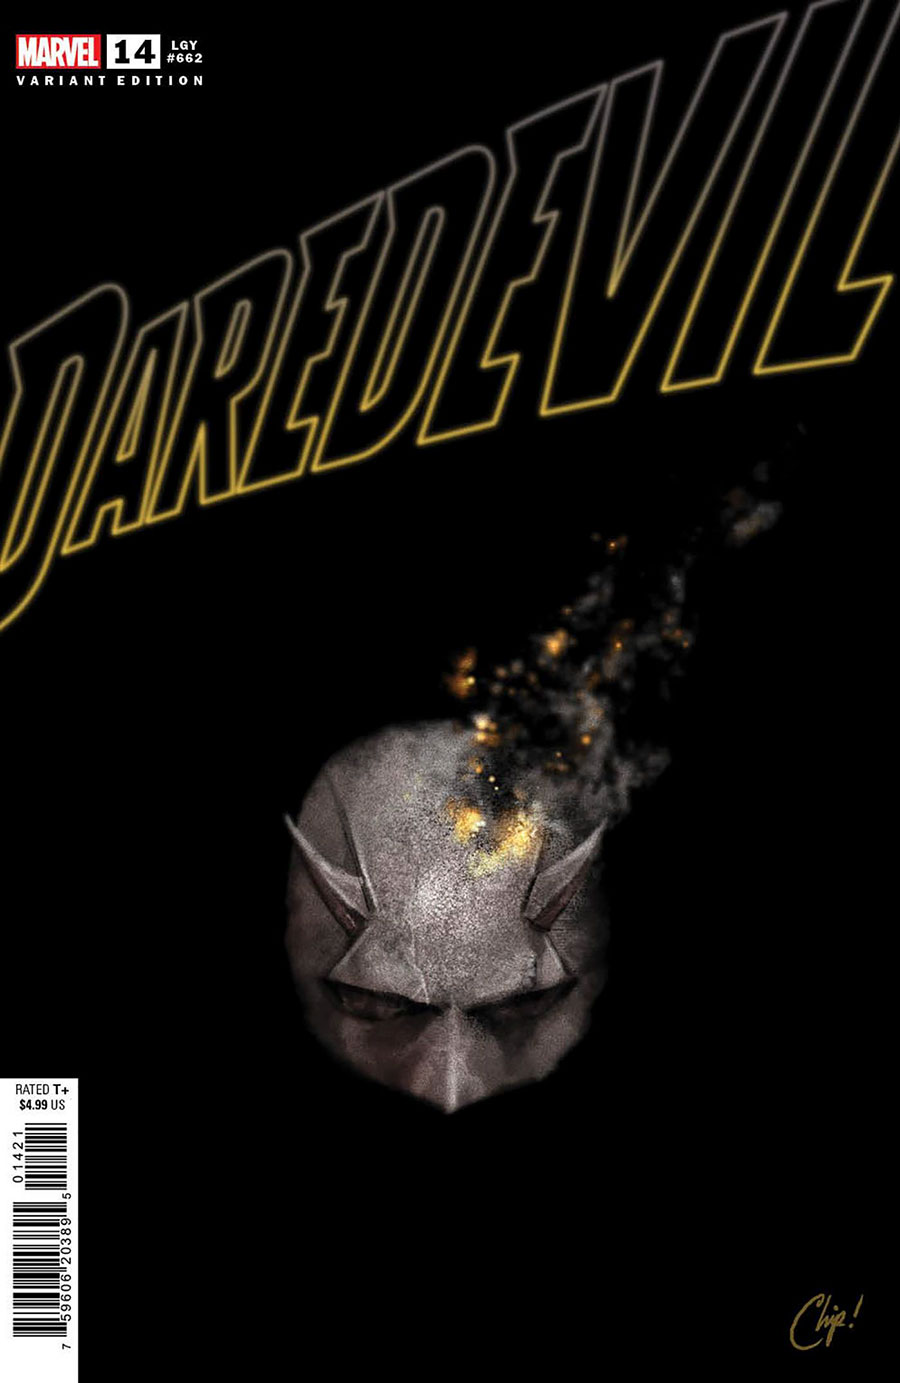 Daredevil Vol 7 #14 Cover B Variant Chip Zdarsky Cover (Limit 1 Per Customer)